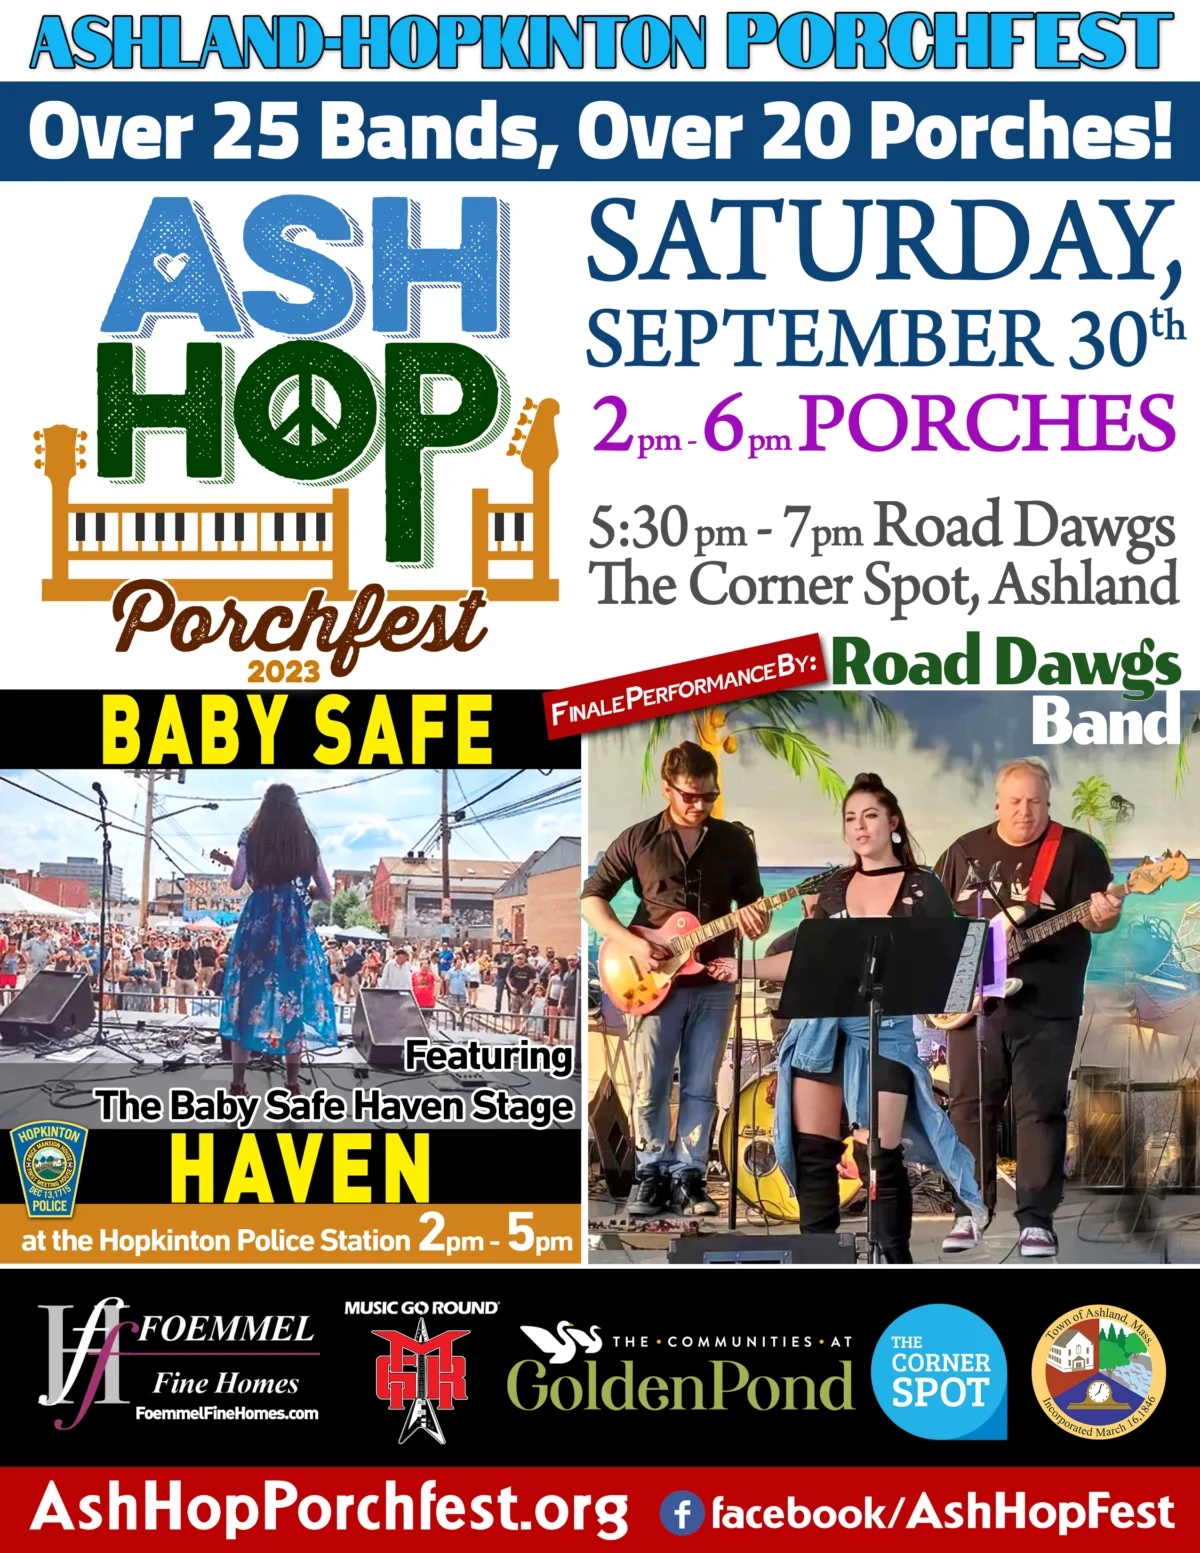 Ash Hop Porchfest Ashland-Hopkinton Music & Arts Fest Saturday September 30 2pm-6pm